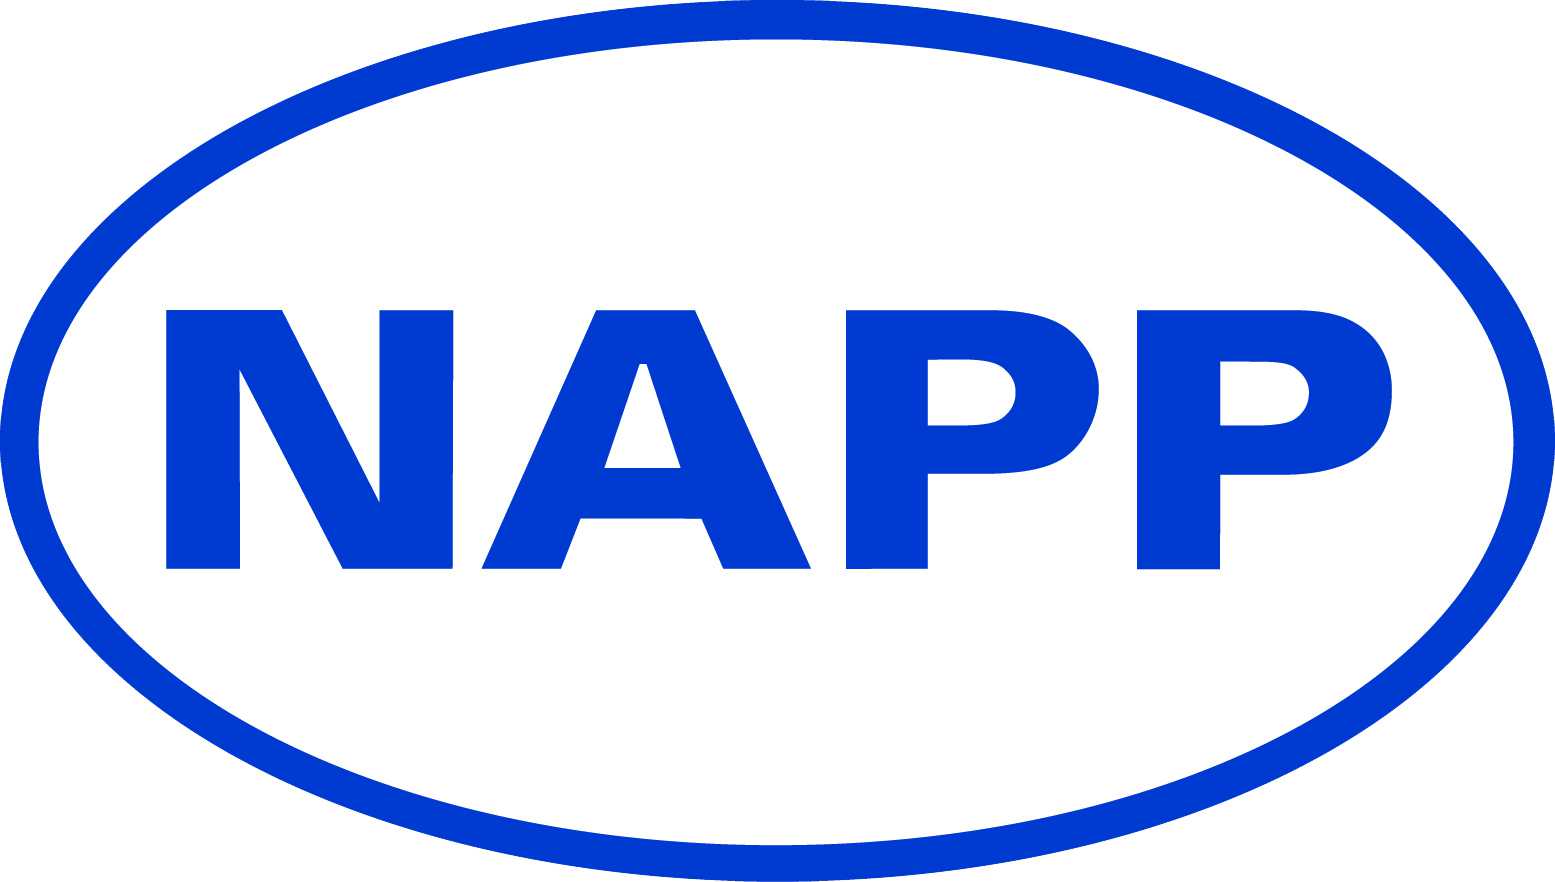 A C in Blue Oval Logo - Blue Napp logo no background - BQF | BQF